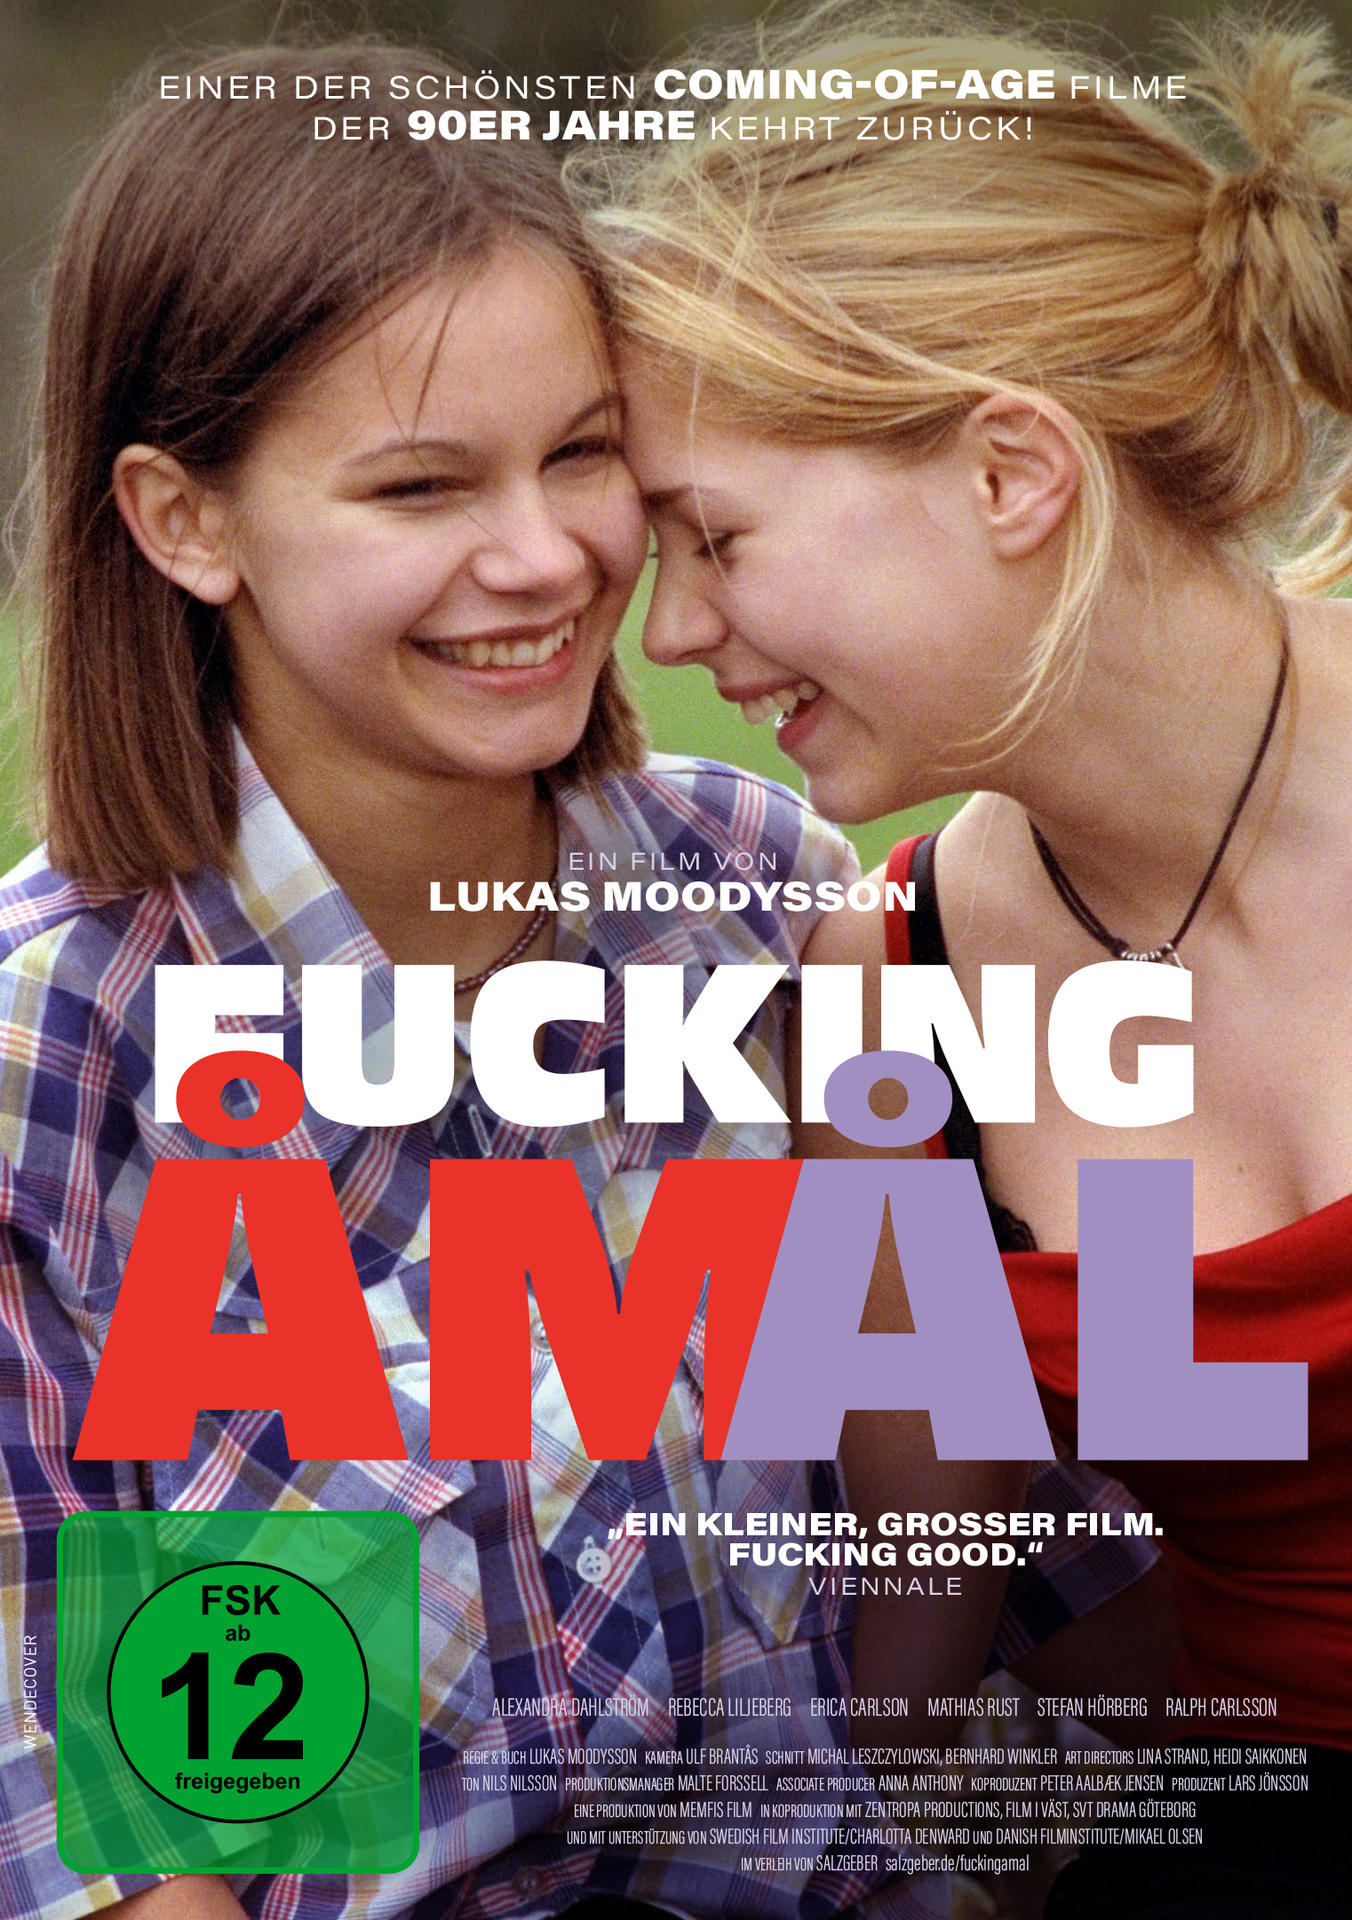 Fucking DVD Amal